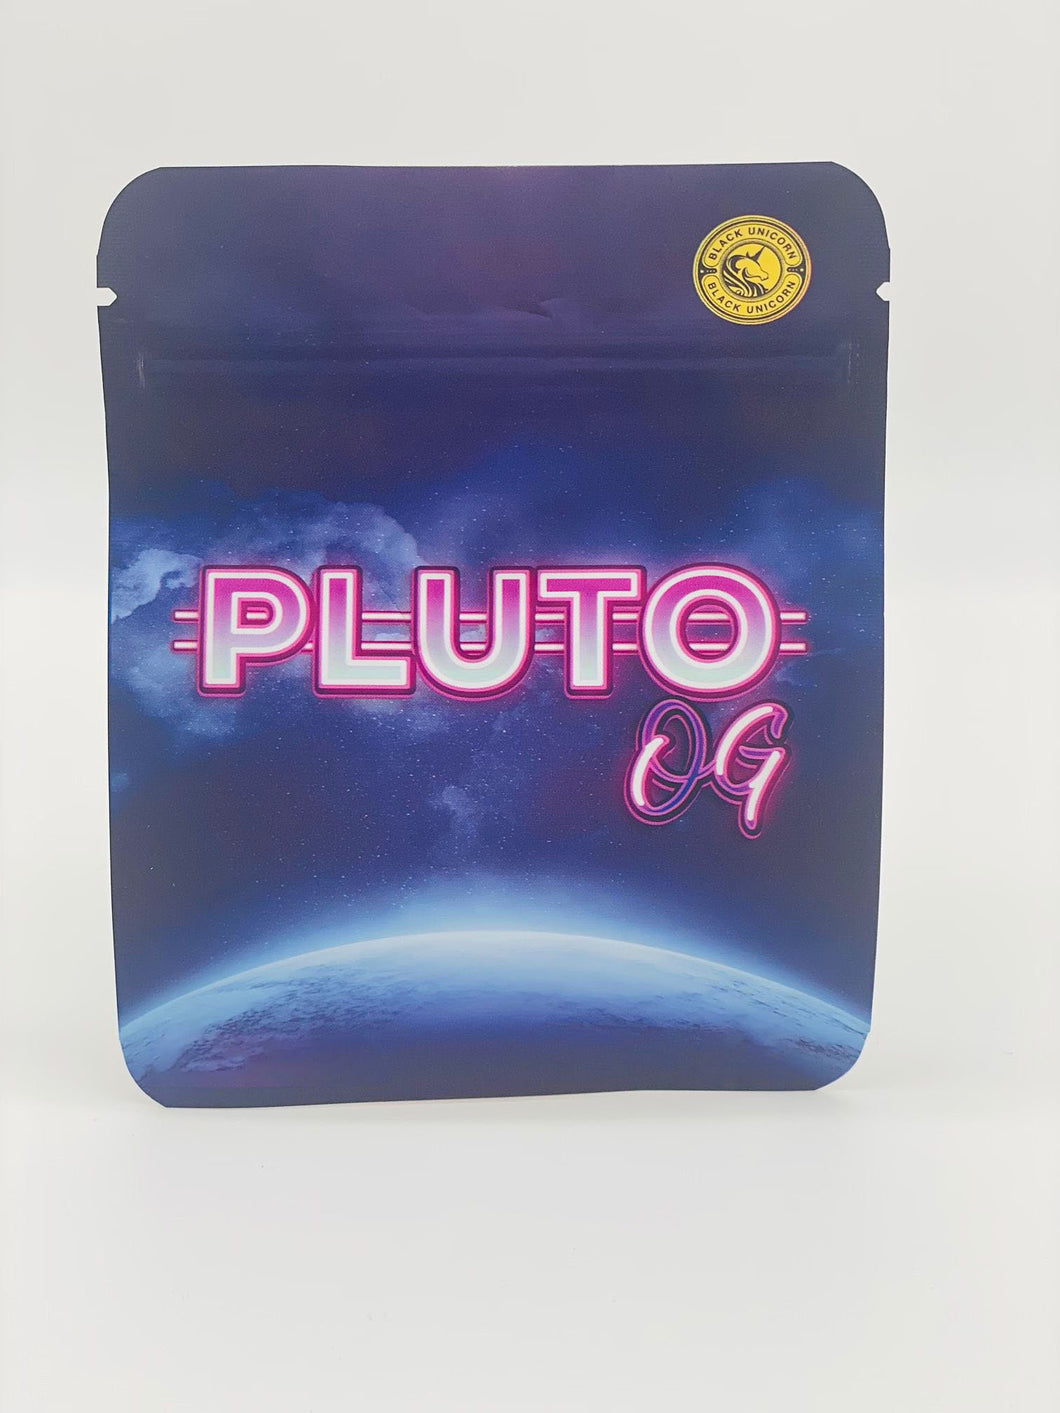 50 Pluto Og 3.5 gram empty Mylar bags